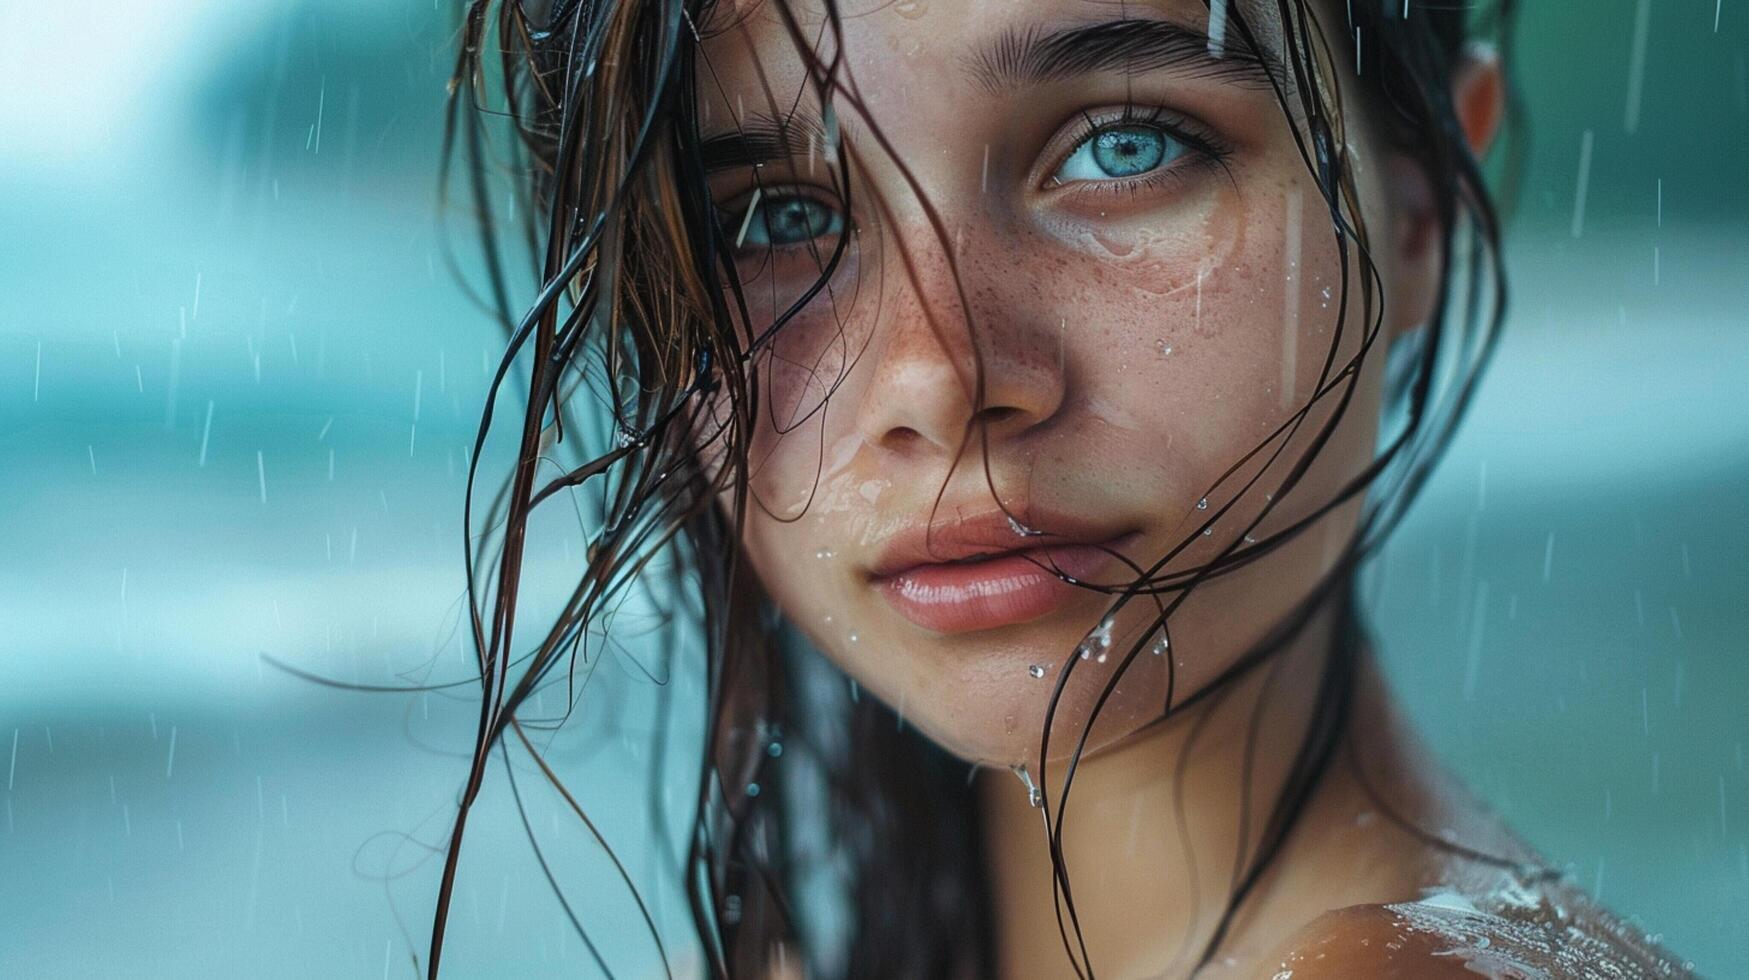 lindo jovem mulher com molhado cabelo olhando foto